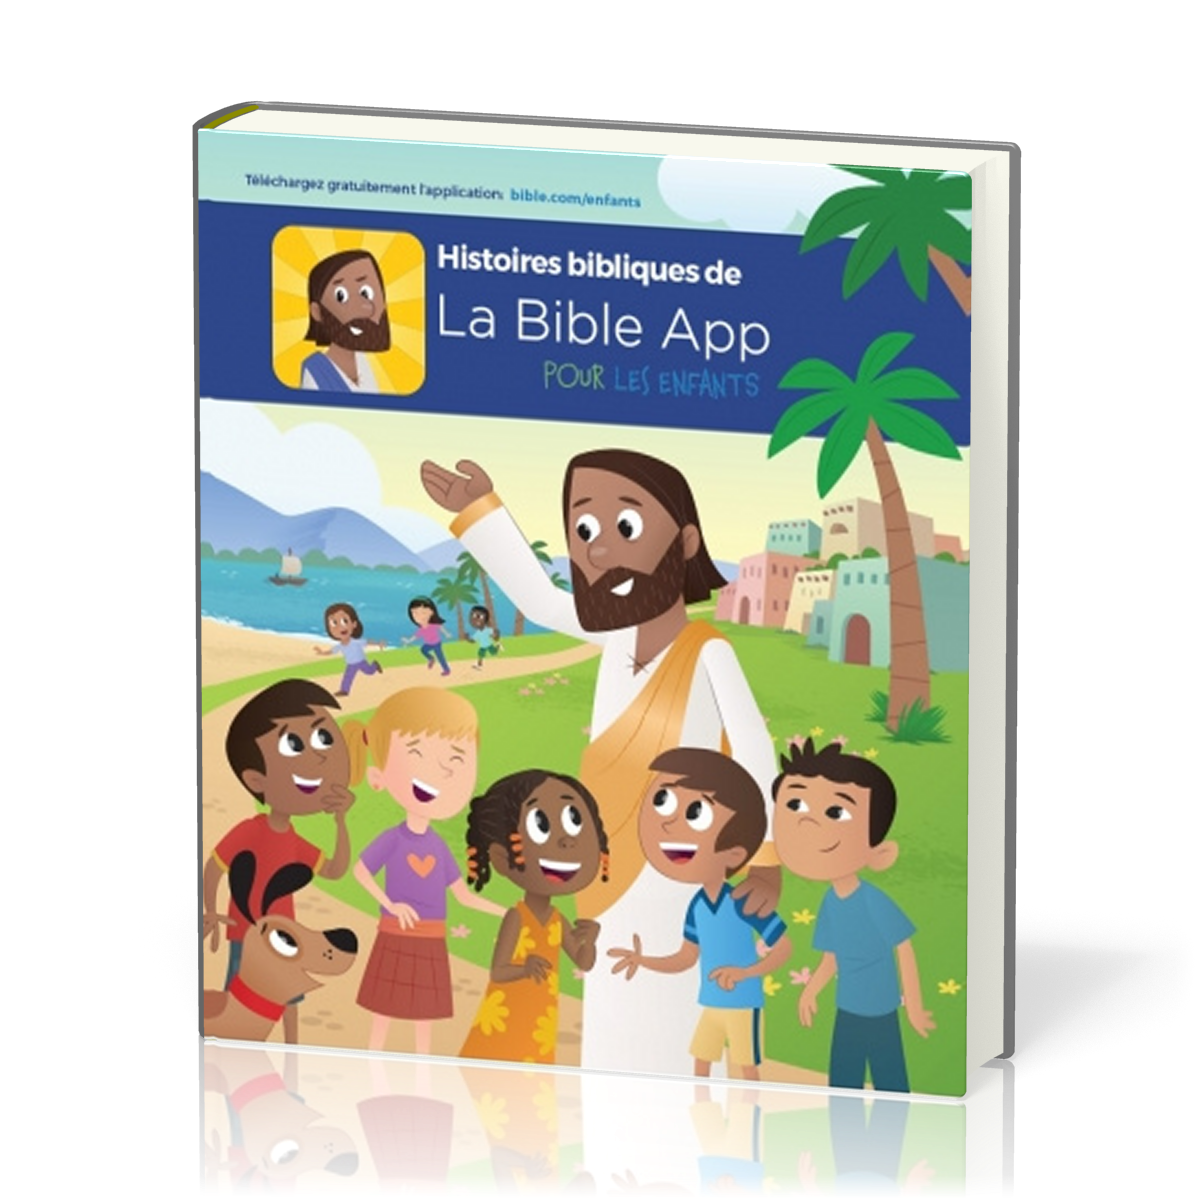 Histoires bibliques de la Bible App - pour les enfants